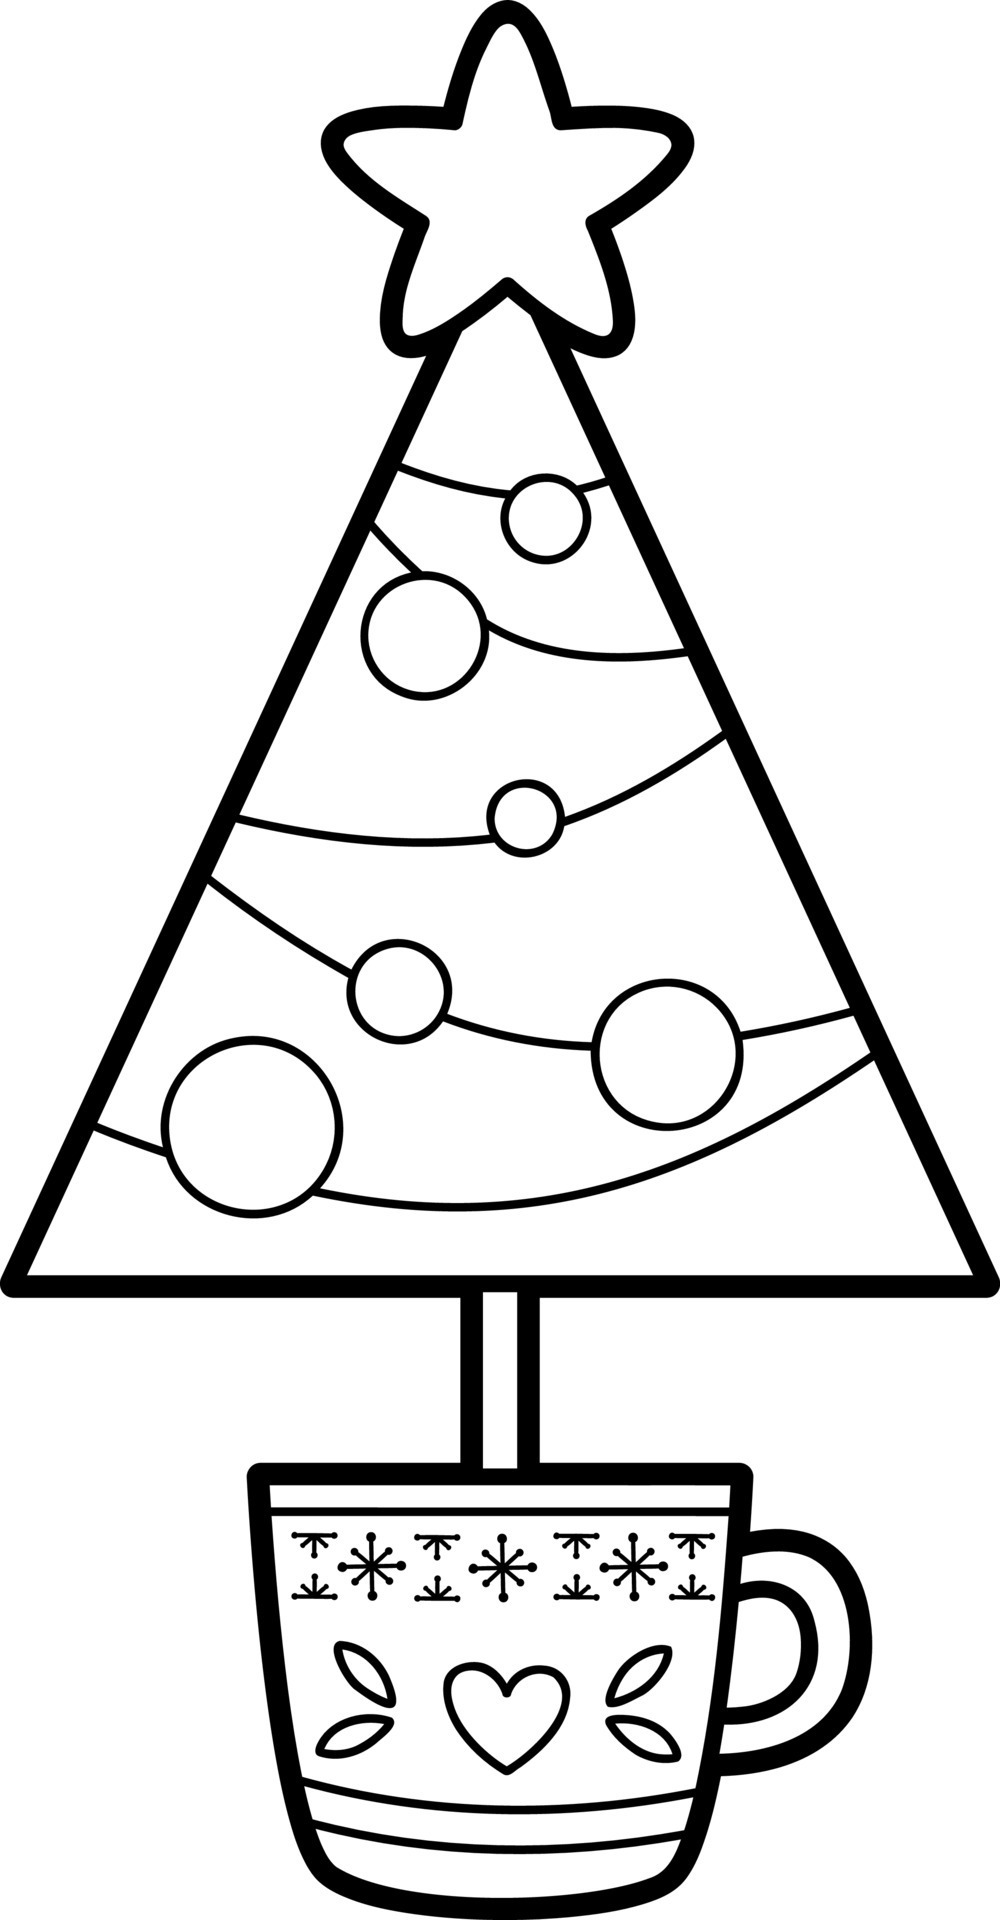 livro de colorir de natal ou página. ilustração em vetor preto e branco de  árvore de natal 8717441 Vetor no Vecteezy